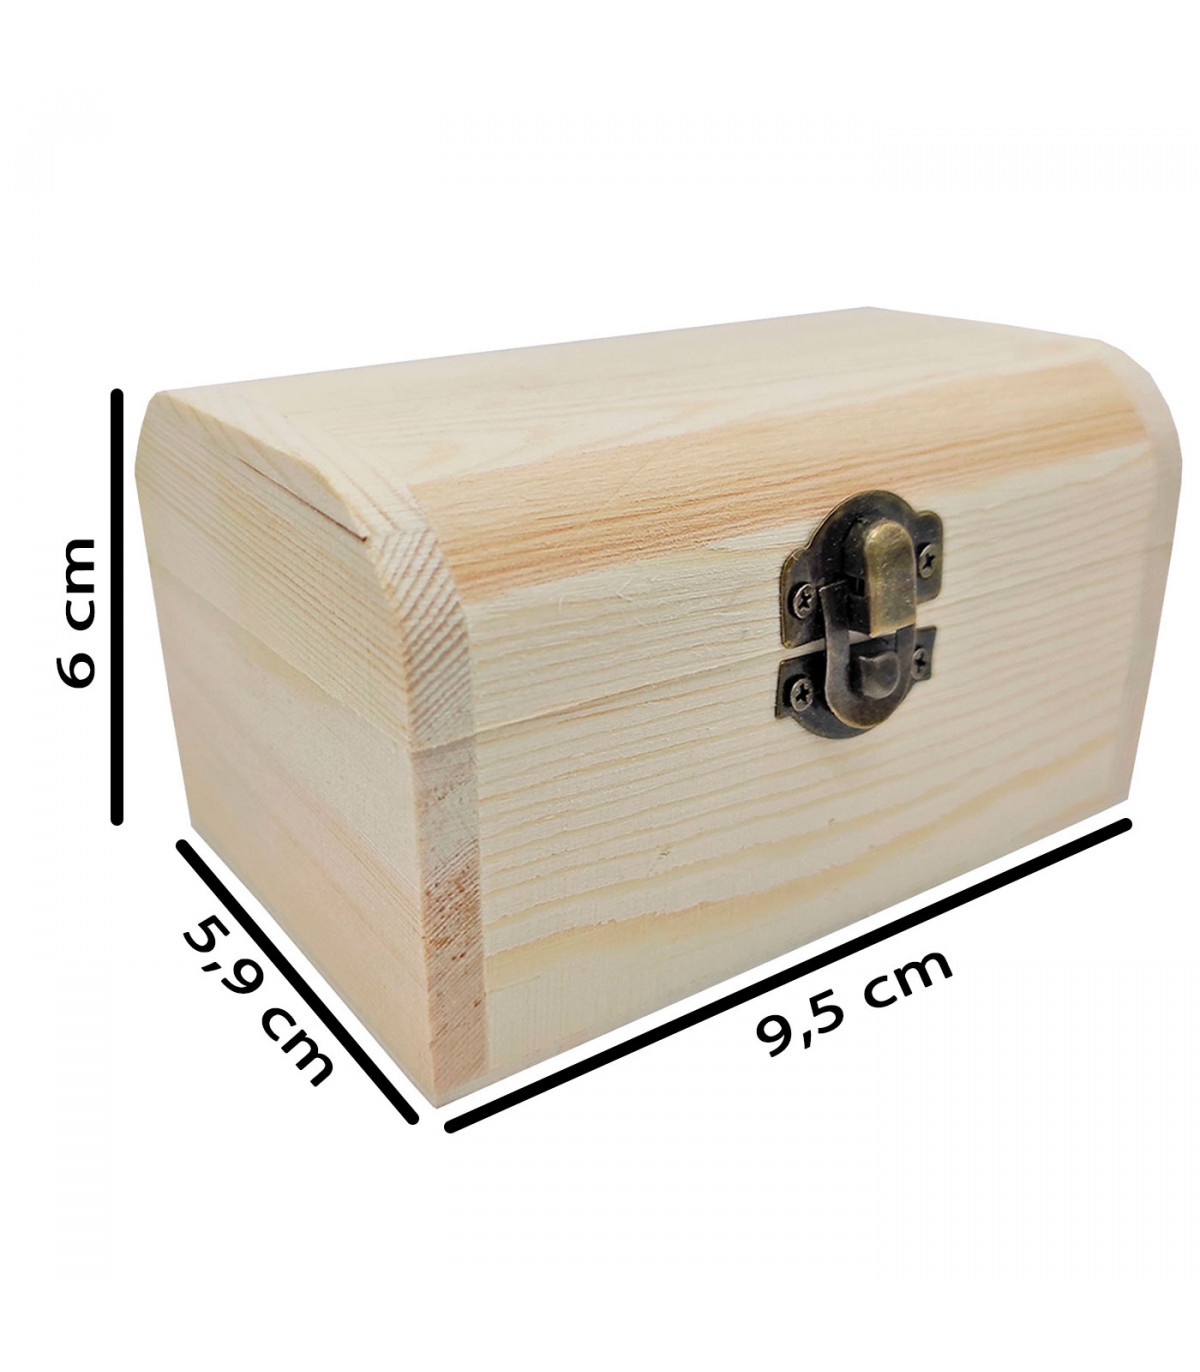 Tradineur - Caja con forma de baúl, madera natural, cierre